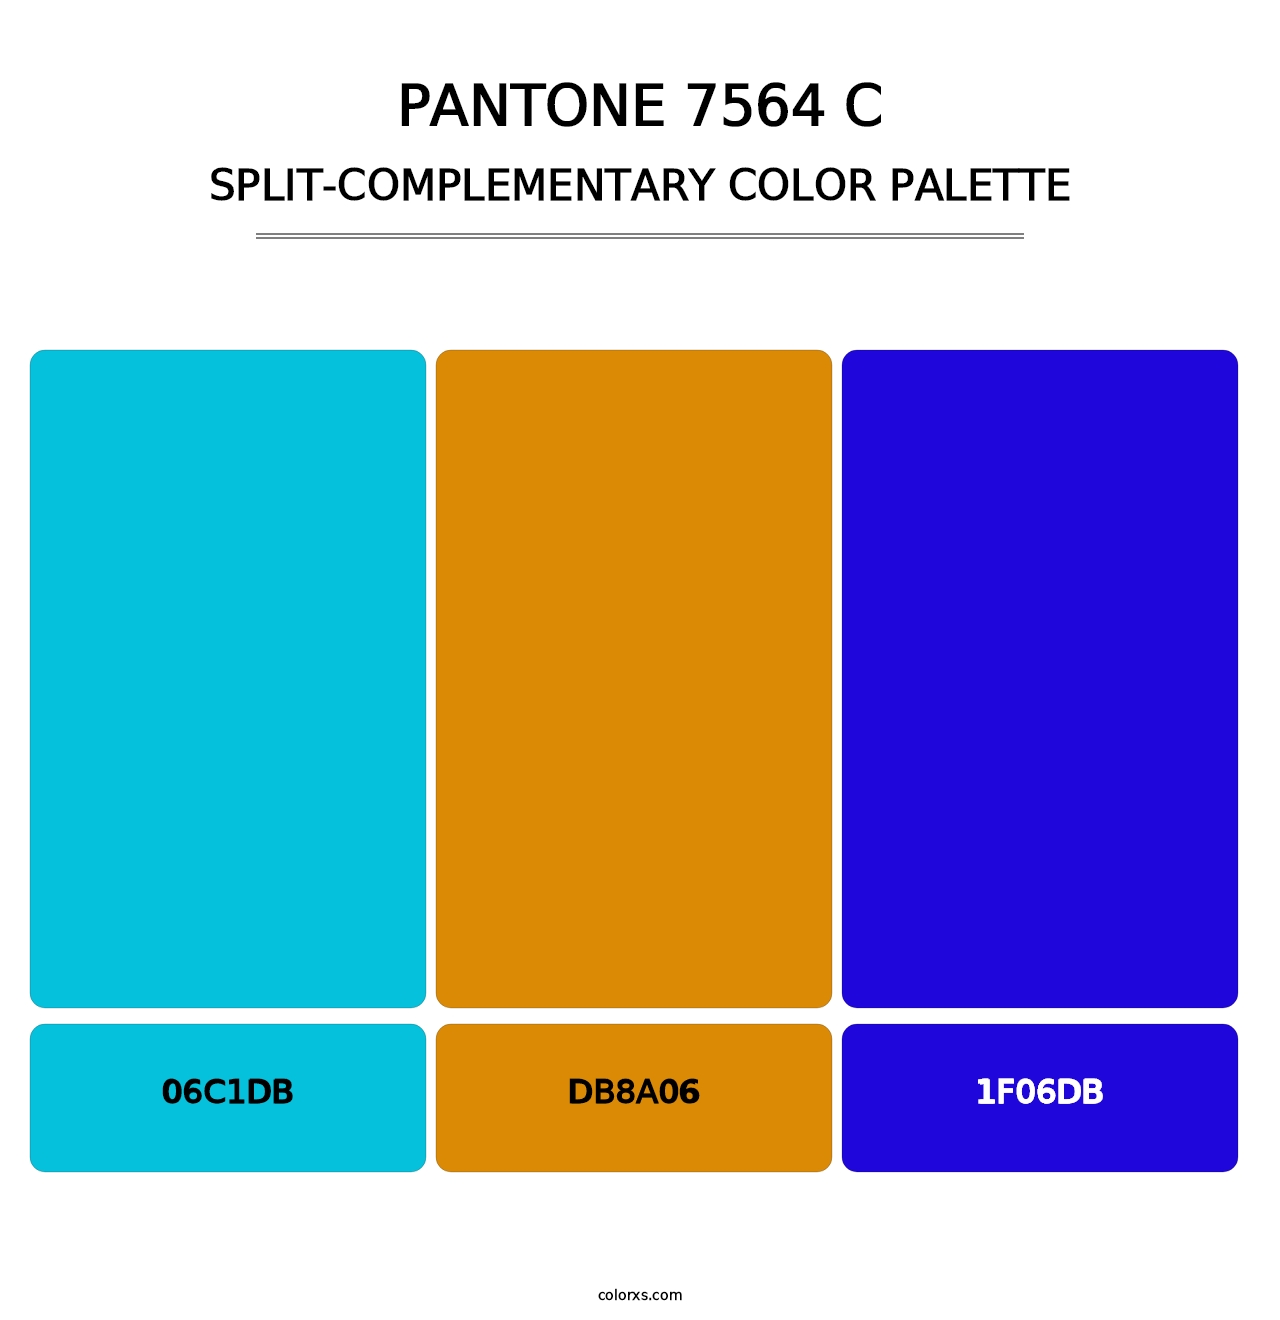 PANTONE 7564 C - Split-Complementary Color Palette